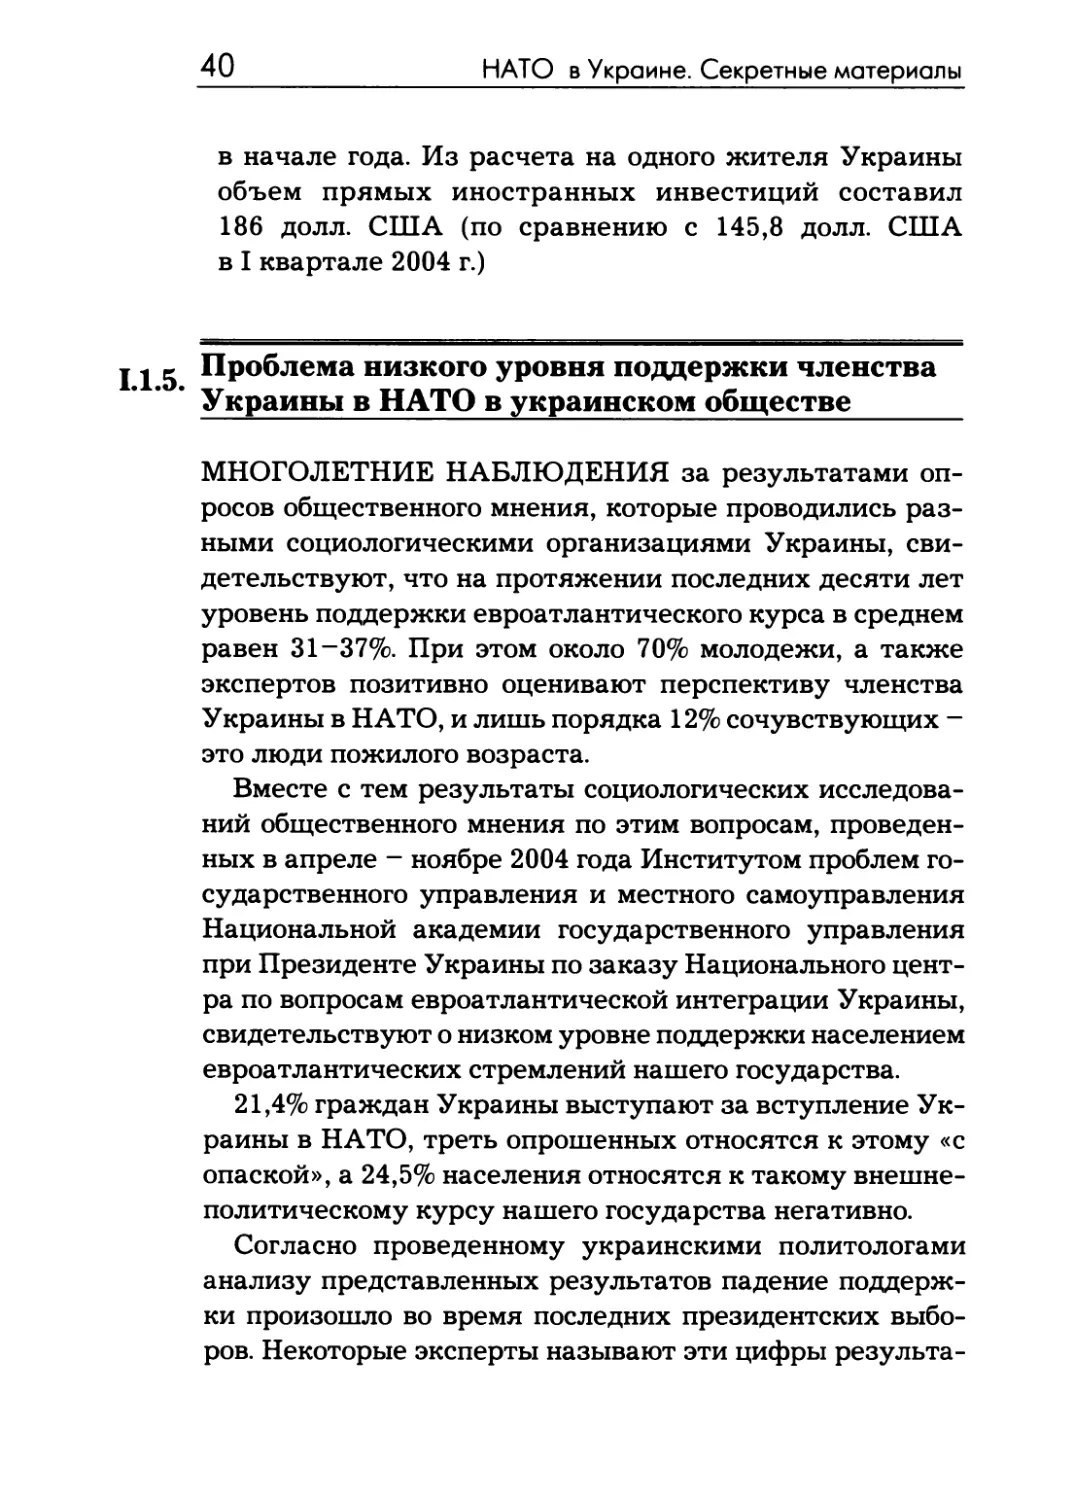 1.1.5.  Проблема  низкого  уровня  поддержки членства  Украины  в  НАТО  в  украинском обществе